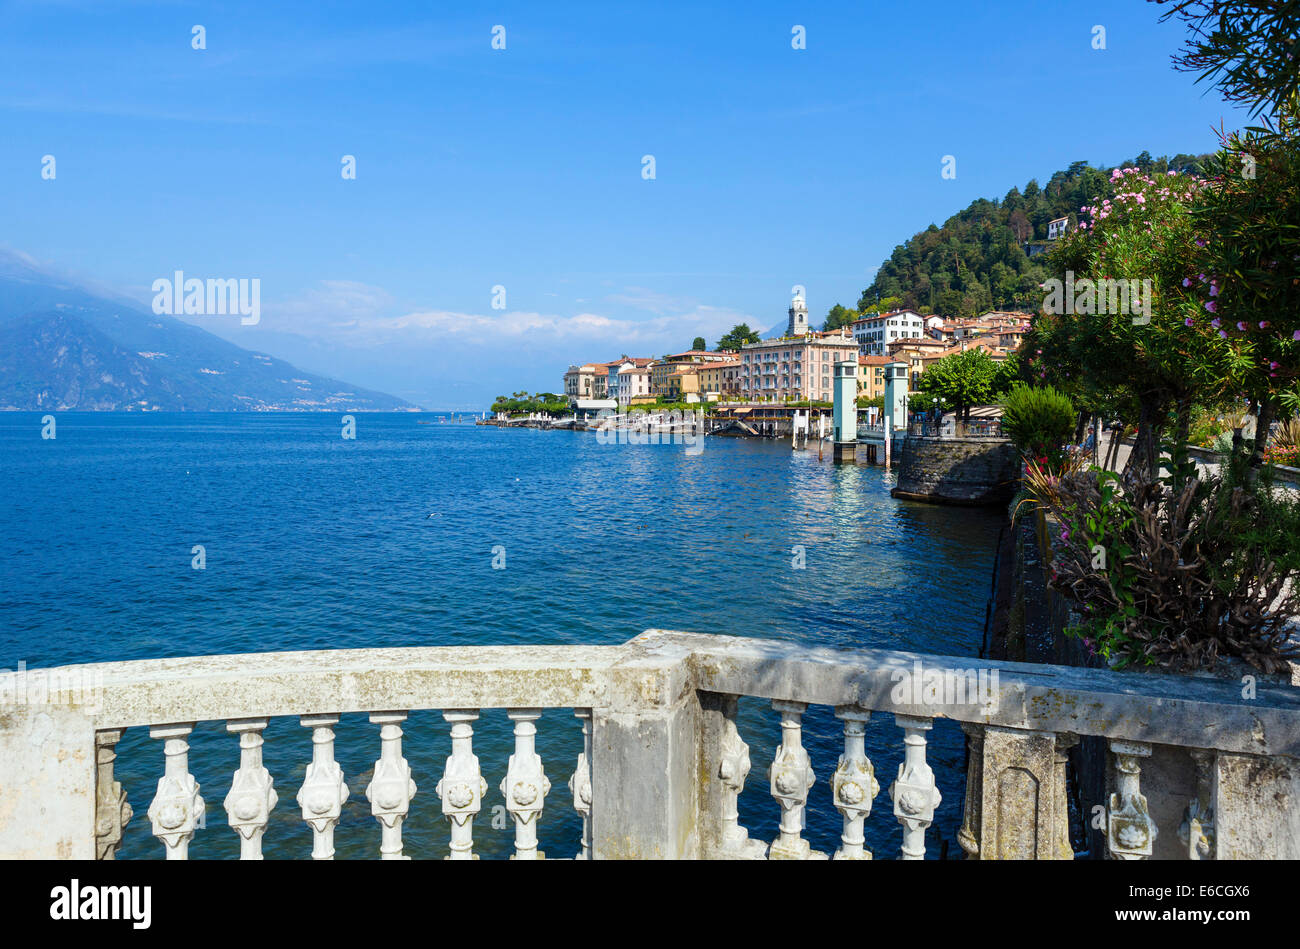 Il lago di Como. Il lungolago di Bellagio, Lombardia, Italia Foto Stock